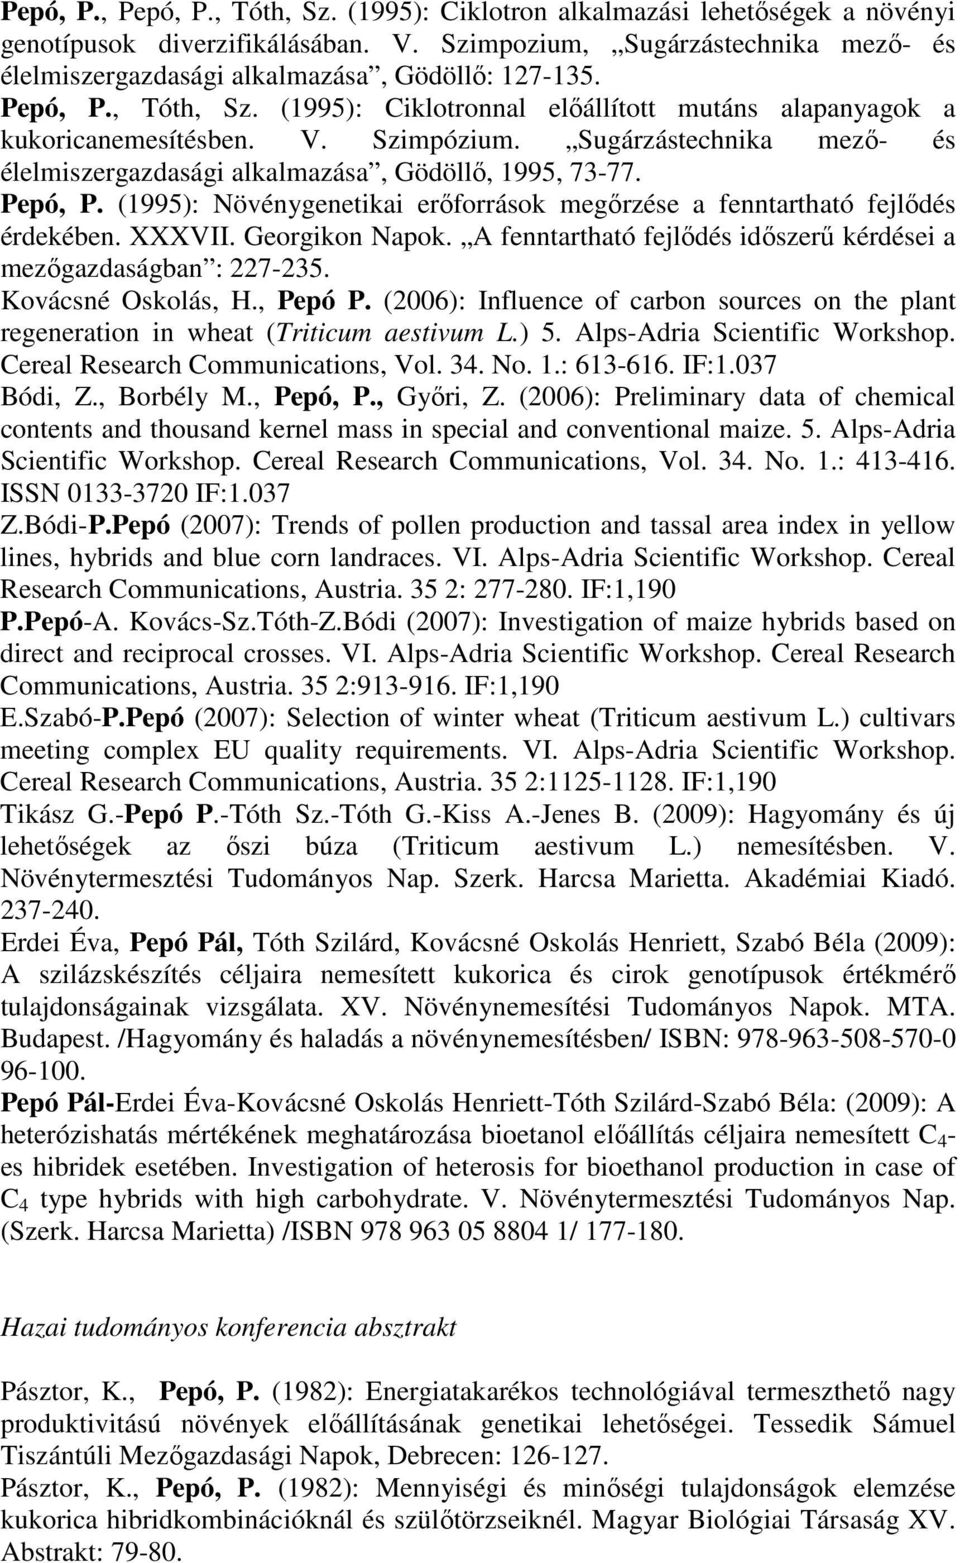 Sugárzástechnika mező- és élelmiszergazdasági alkalmazása, Gödöllő, 1995, 73-77. Pepó, P. (1995): Növénygenetikai erőforrások megőrzése a fenntartható fejlődés érdekében. XXXVII. Georgikon Napok.